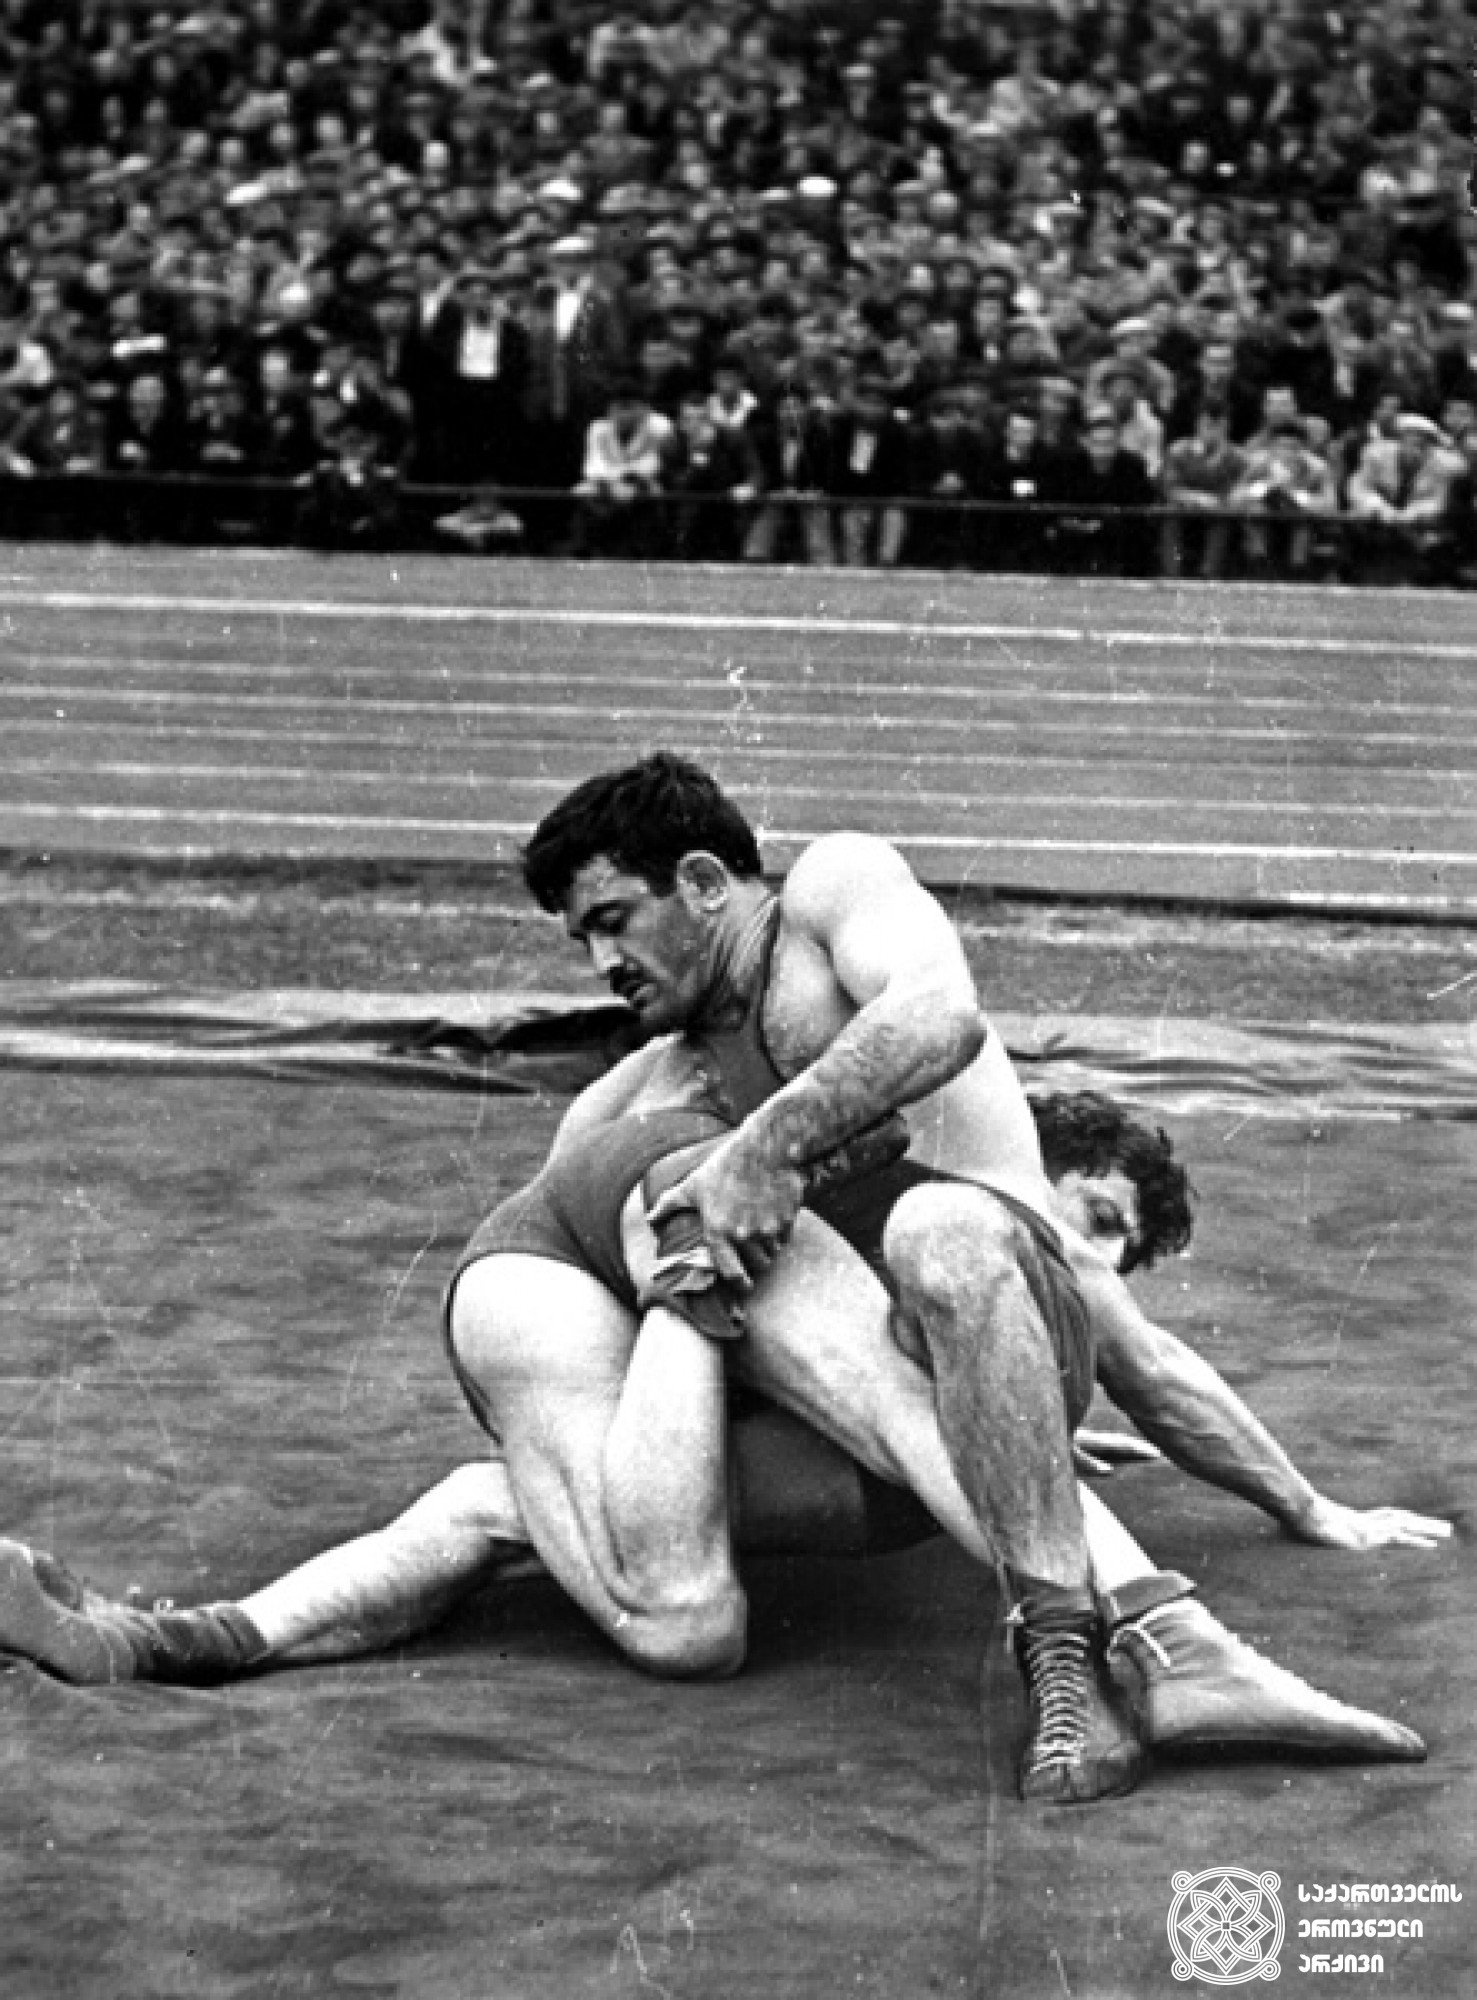 გიორგი სხირტლაძე. <br>
XVI და XVII ოლიმპიური თამაშების მესამე პრიზიორი თავისუფალ ჭიდაობაში (1956, მელბურნი; 1960, რომი). <br>
ფოტო საქართველოს ეროვნული ოლიმპიური კომიტეტის ვებგვერდიდან. <br>
Giorgi Skhirtladze. <br>
Third-prize winner of the XVI and XVII Olympic Games in Wrestling Freestyle (1956, Melbourne; 1960, Rome). <br>
Photo from the web-site of the Georgian National Olympic Committee.